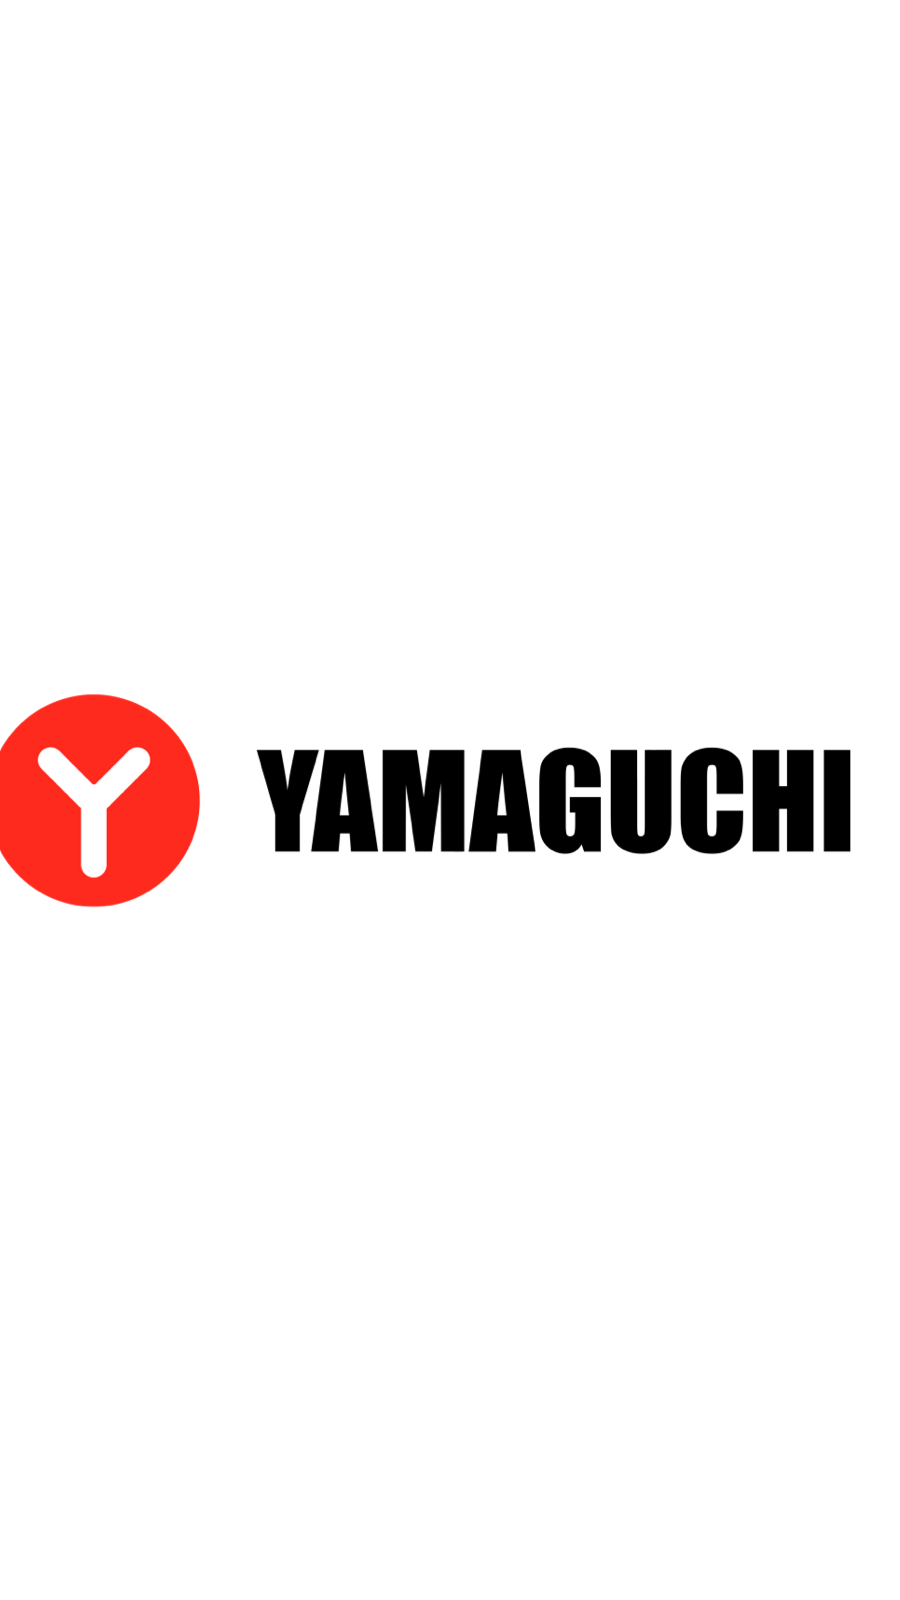 Yamaguchi